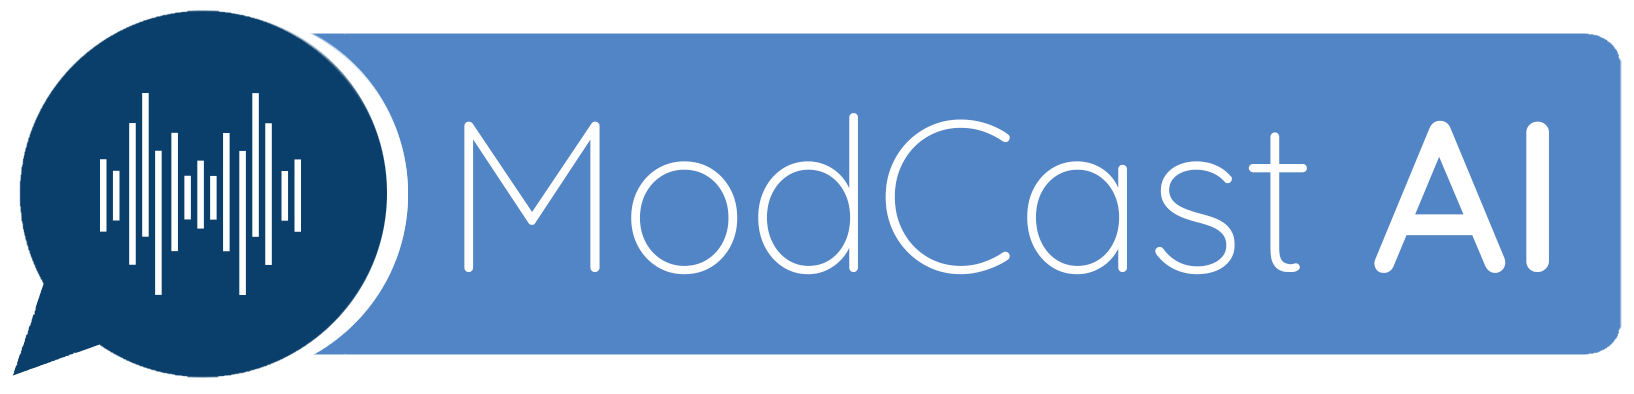 ModCast AI Logo